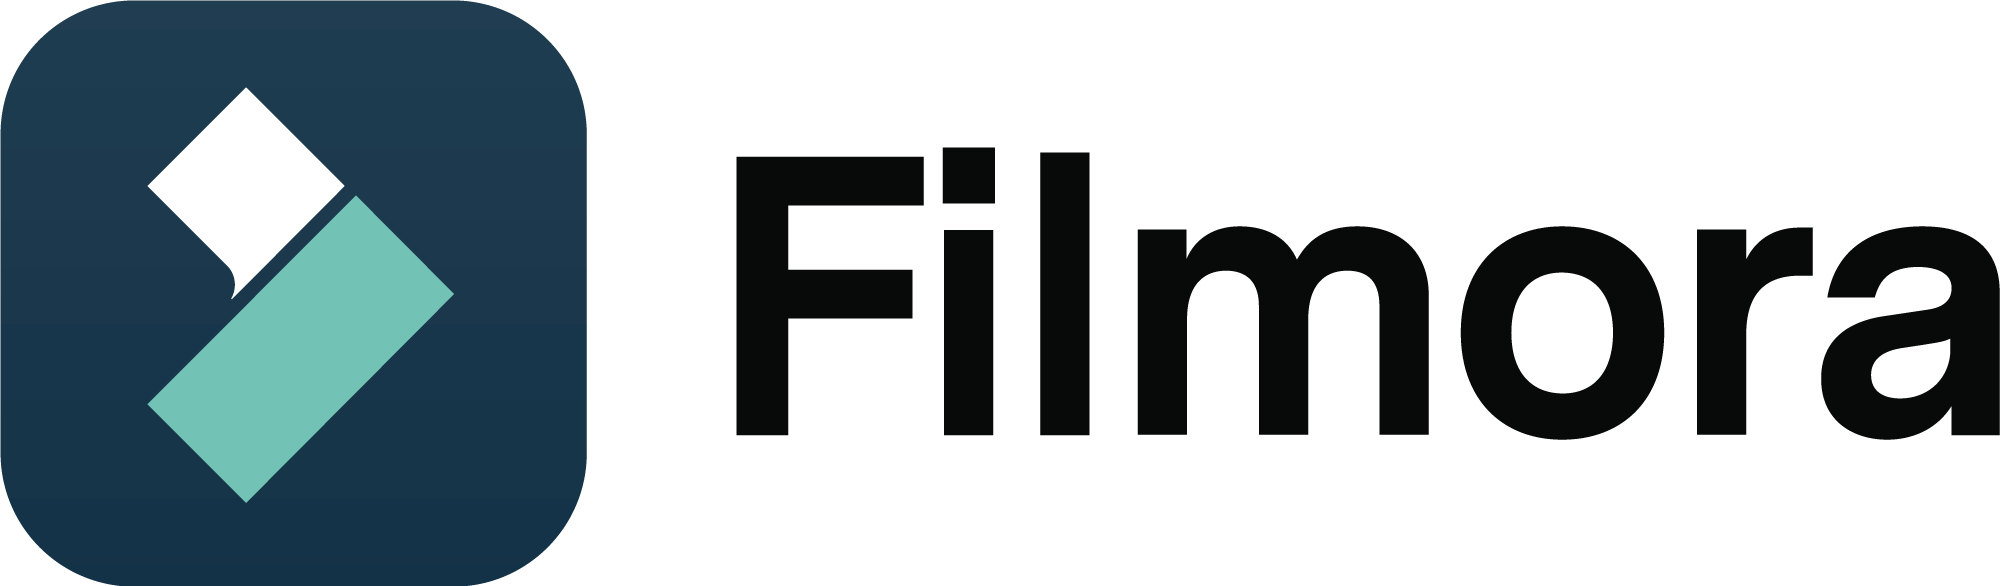 Filmora Logo PNG title=